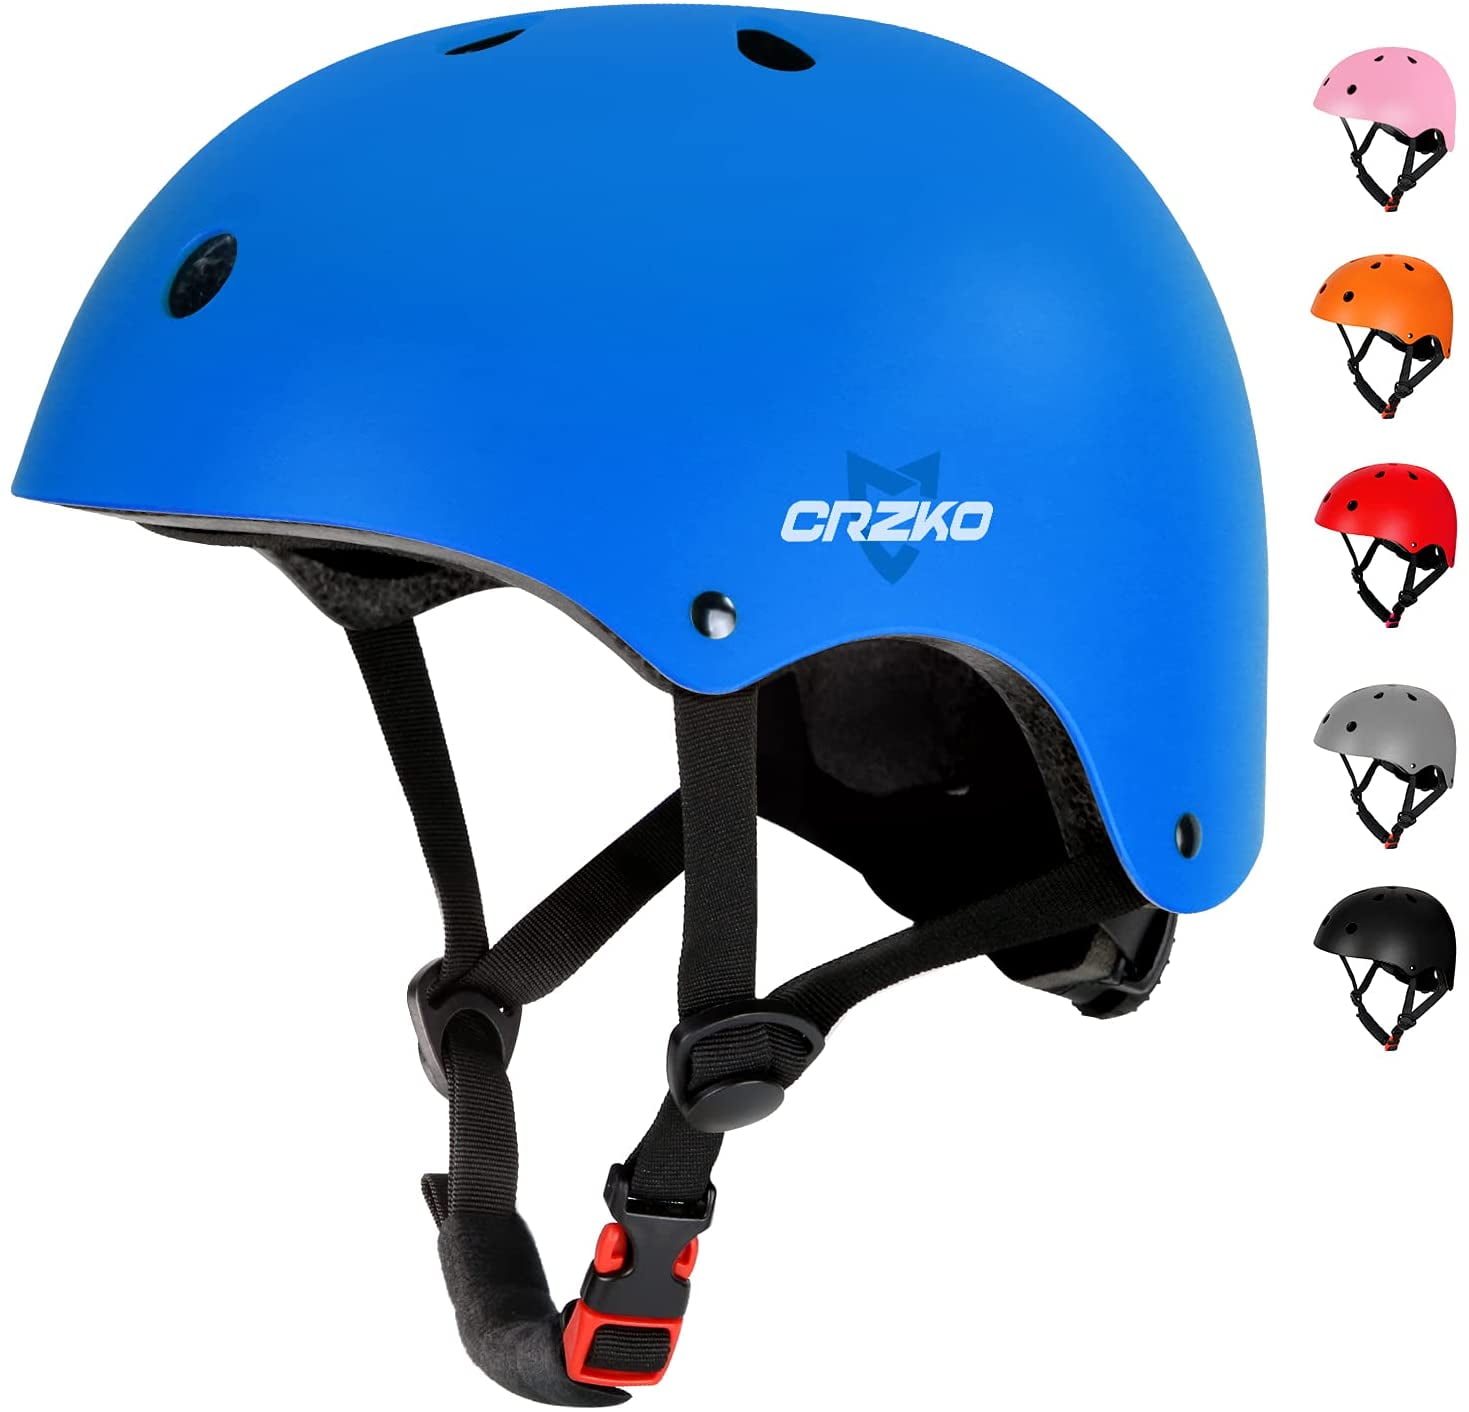 Adjustable Child Bicycle Safety Blue Kids Bike Helmet for Boys & Girls 